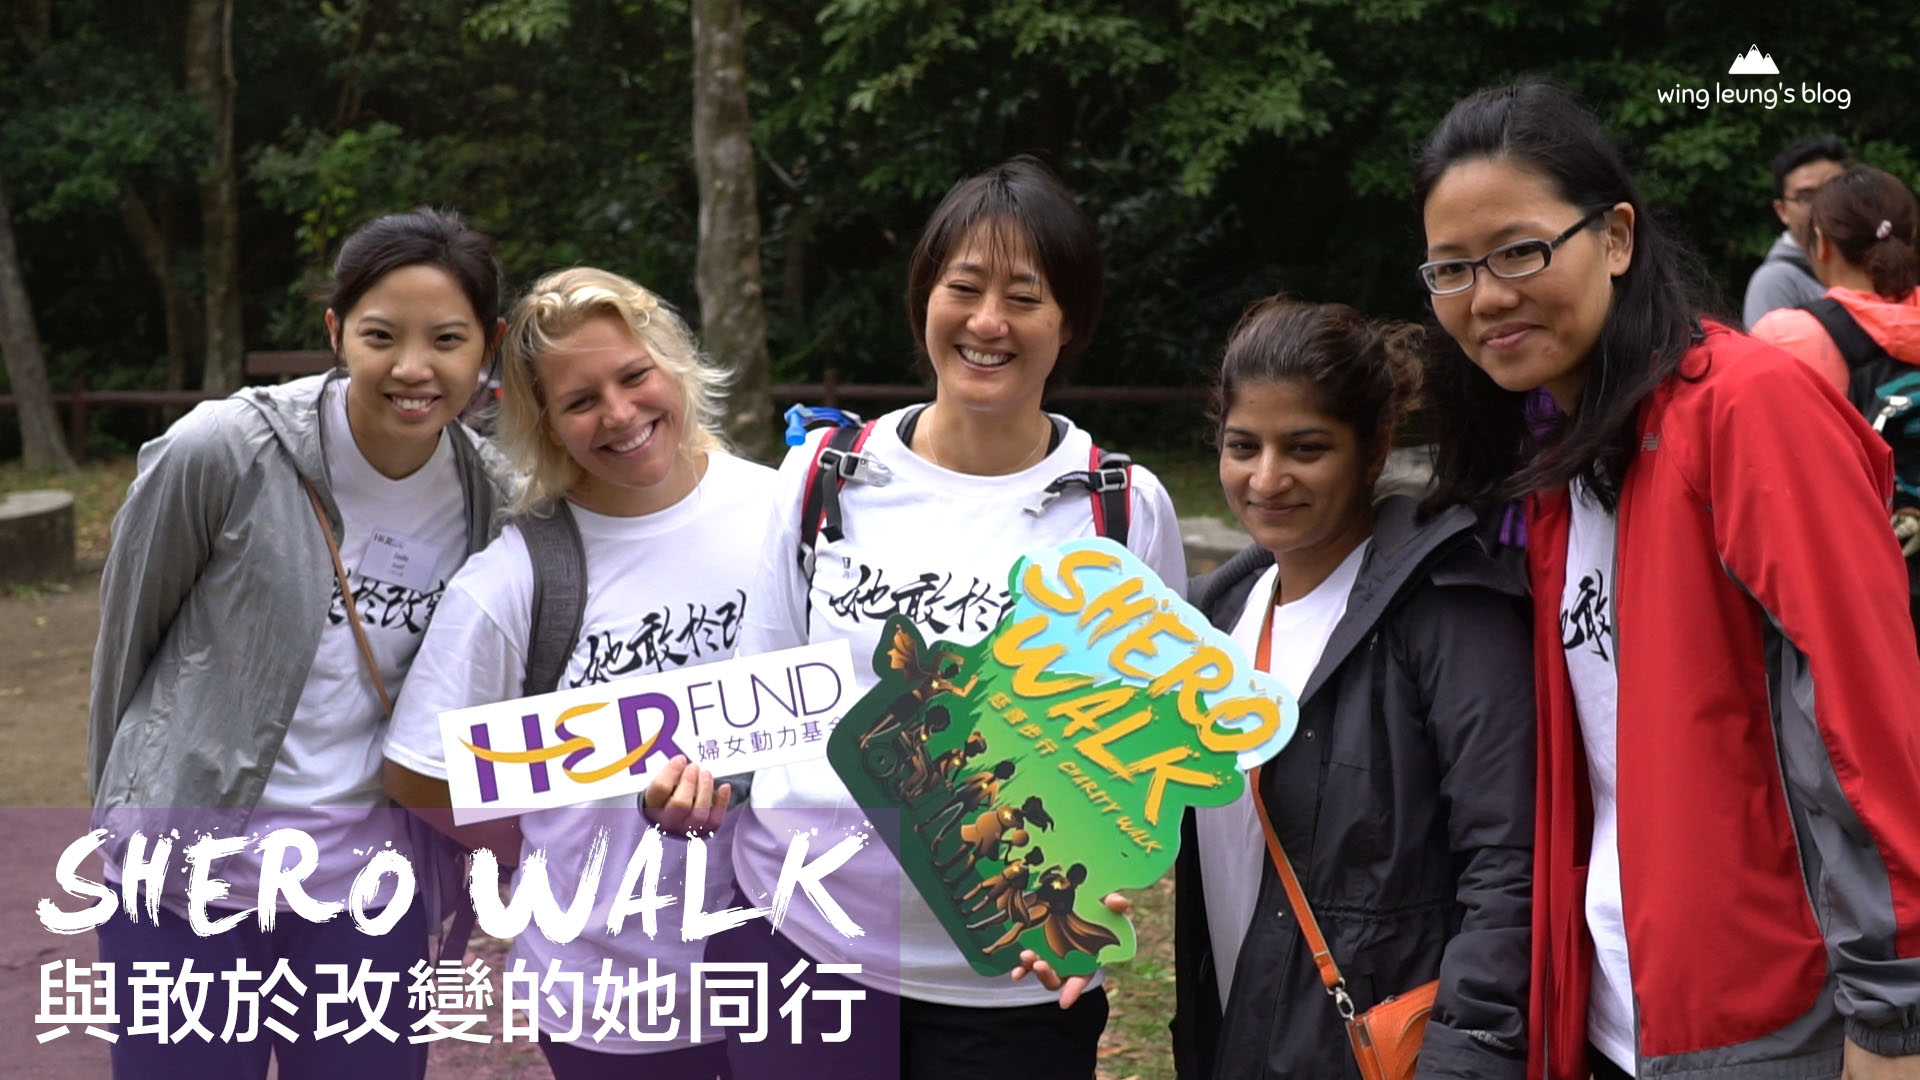 婦女動力基金慈善步行 SHERO WALK